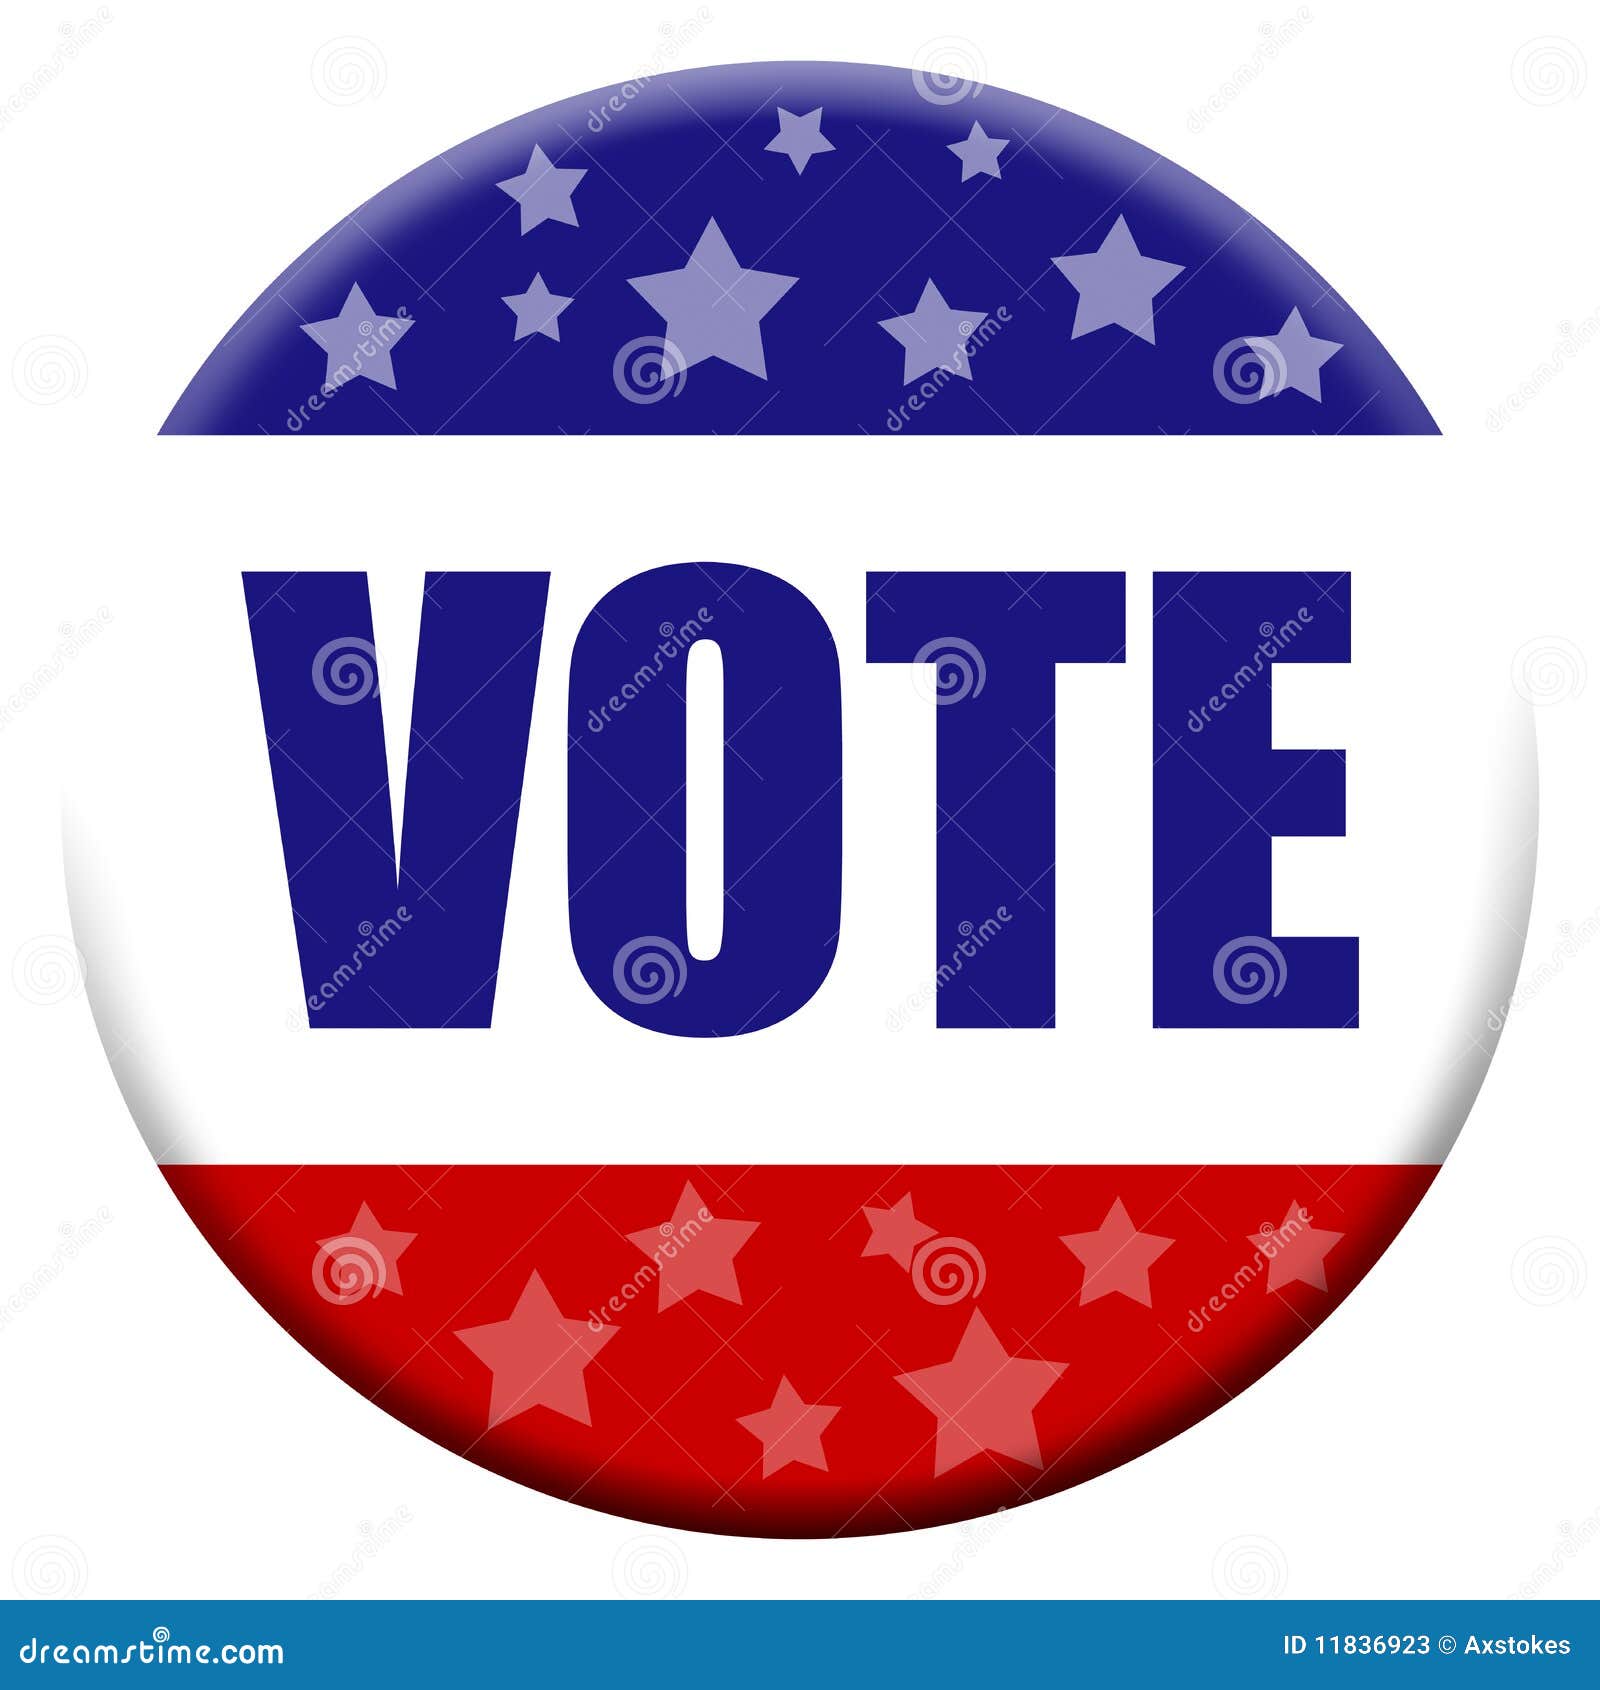 vote button clipart - photo #19